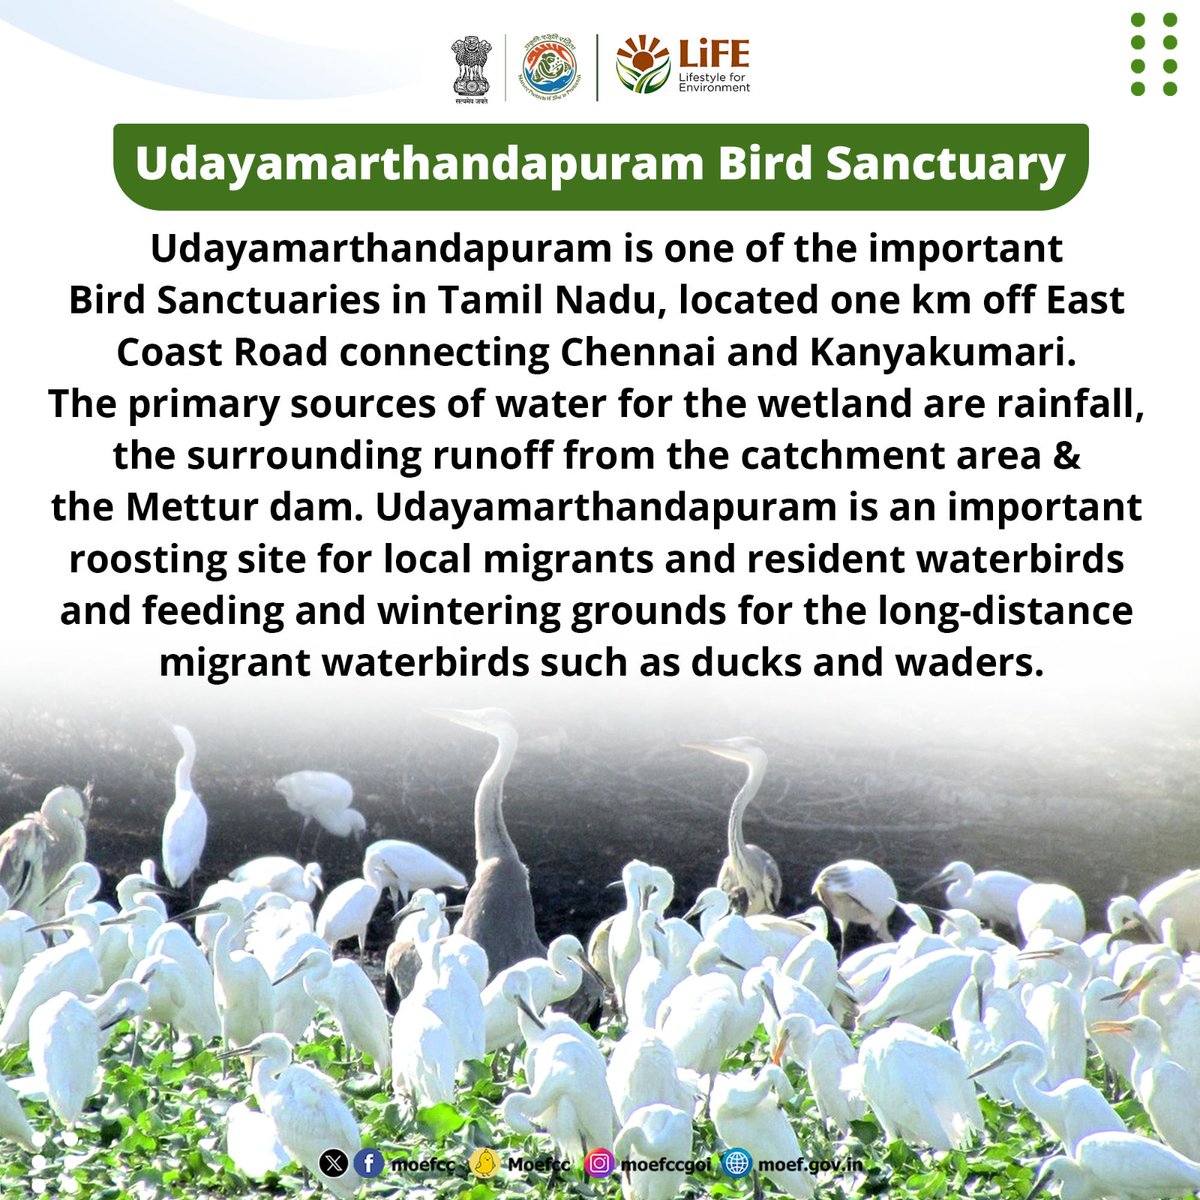 #ChooseLiFE #MissionLiFE @moefcc 
Udayamarthandapuram Bird Sanctuary